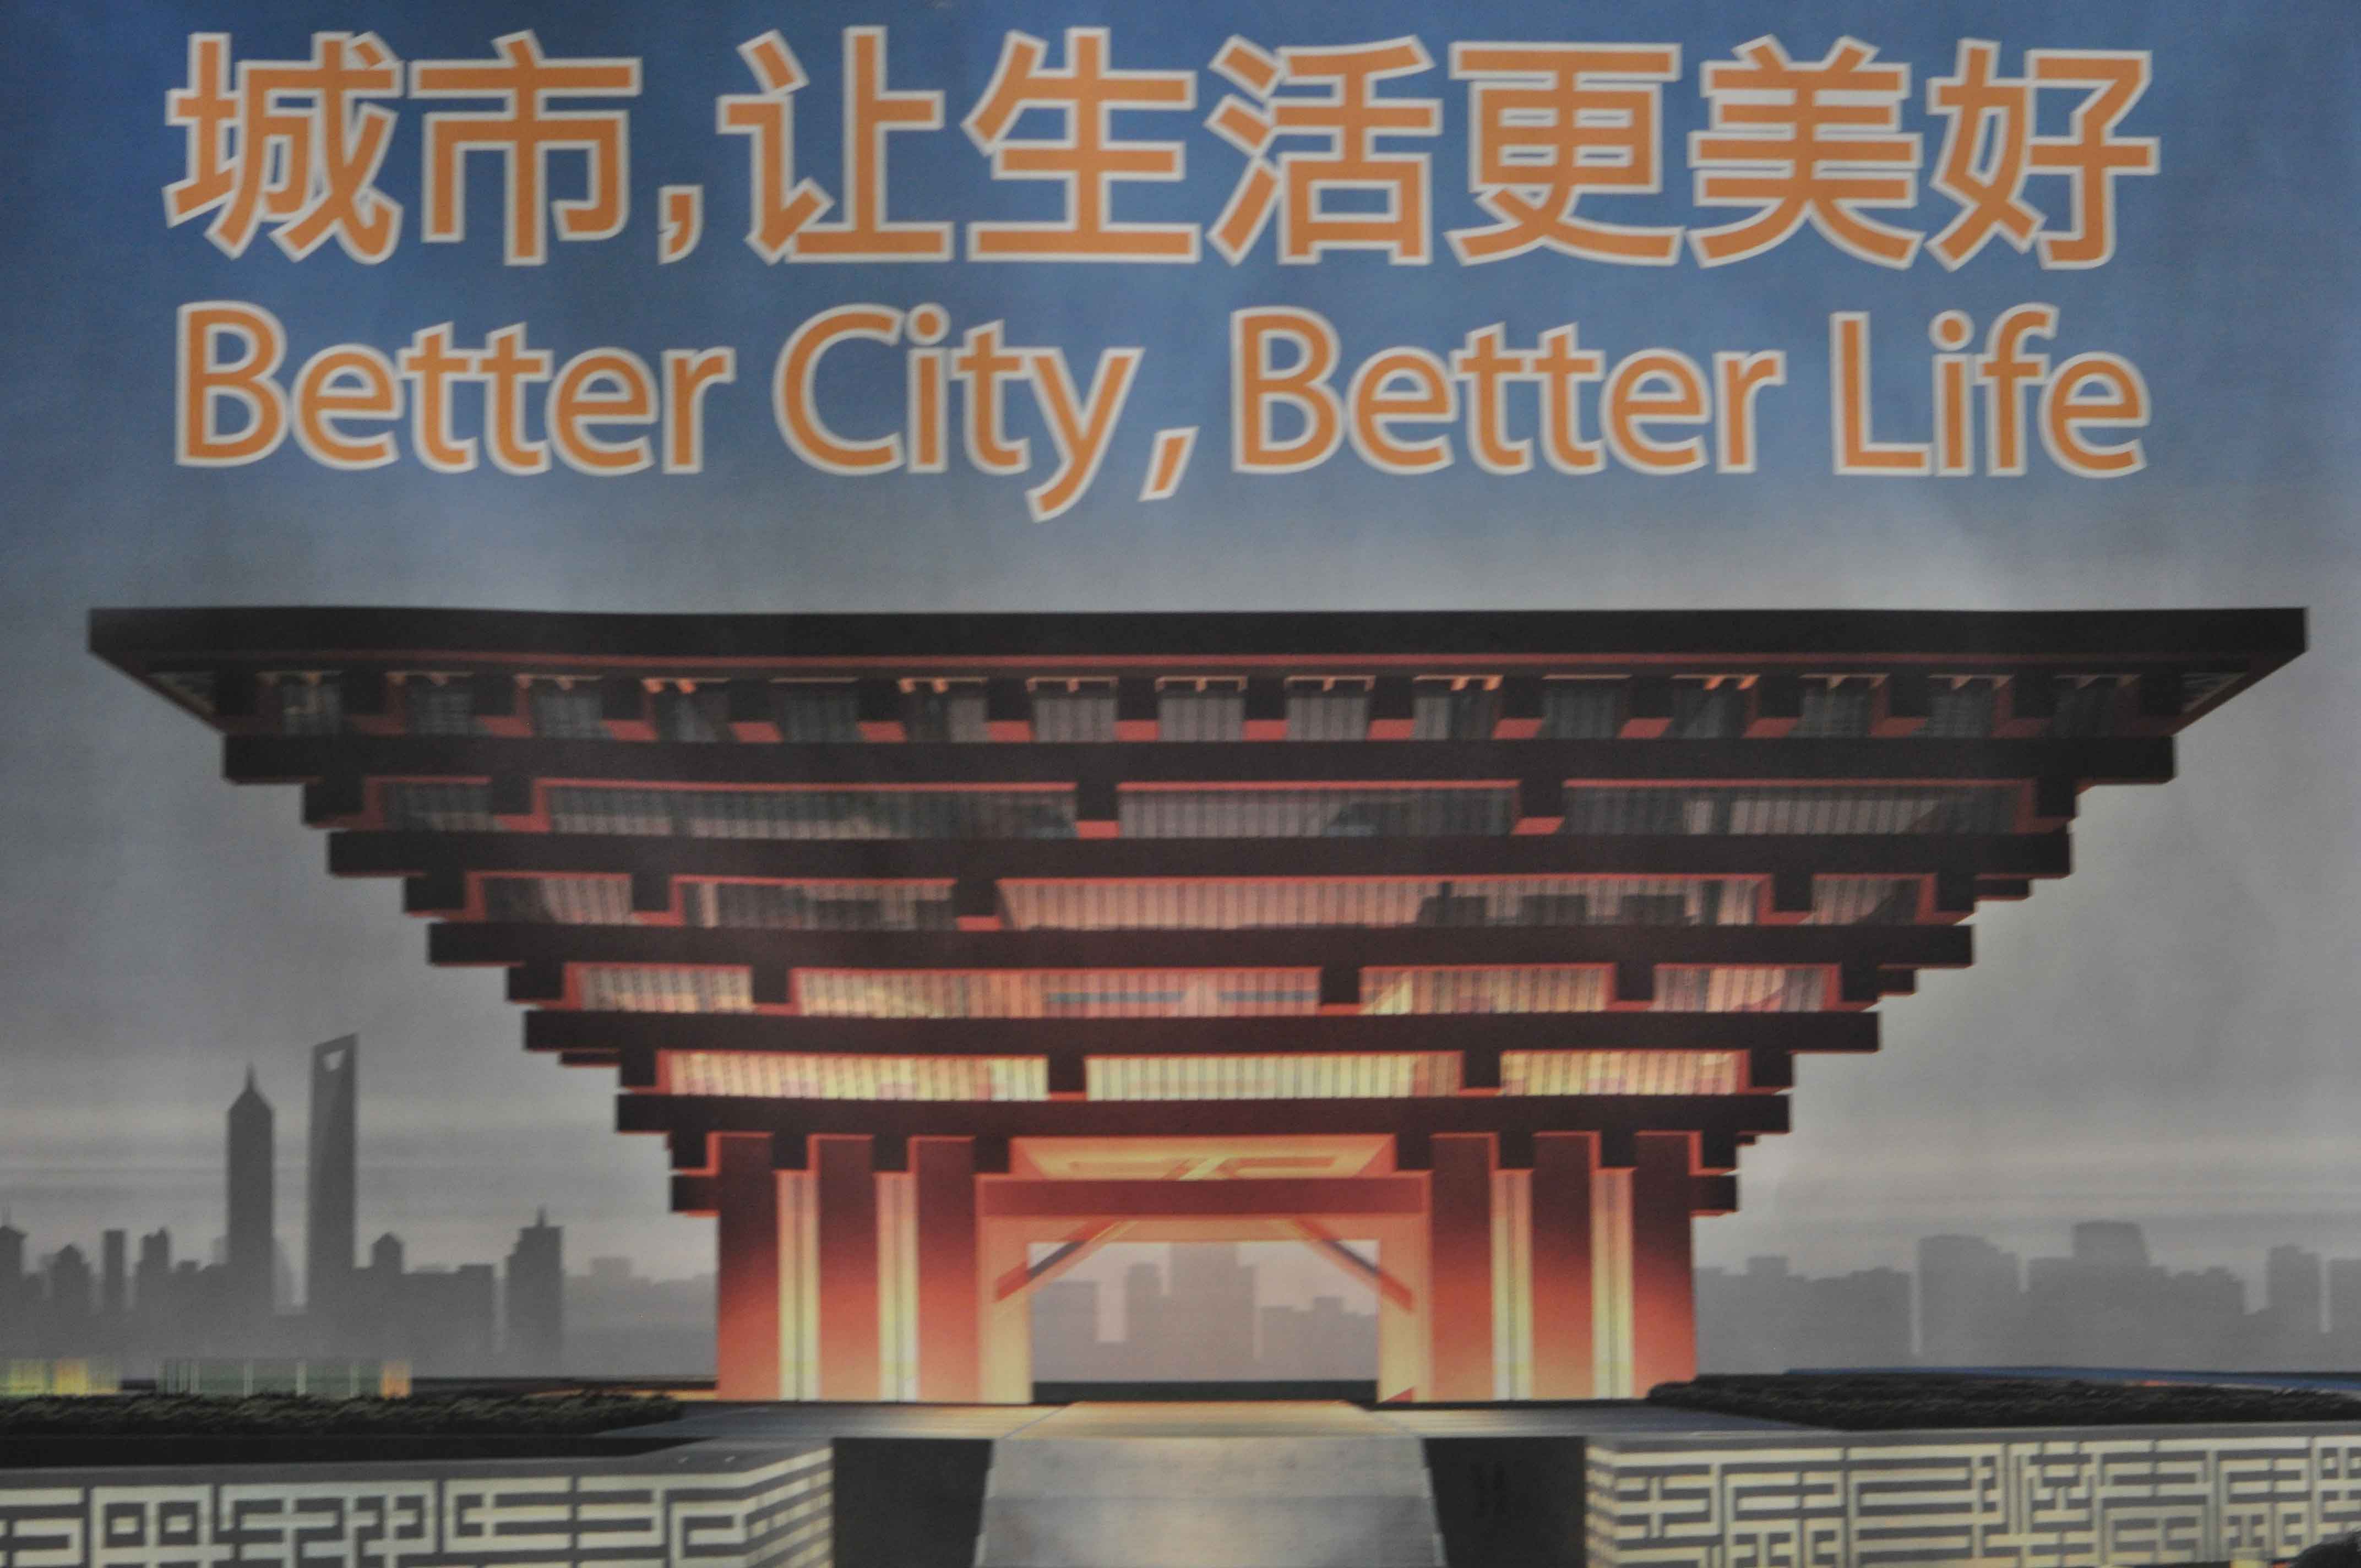 Better-city-better-life.jpg